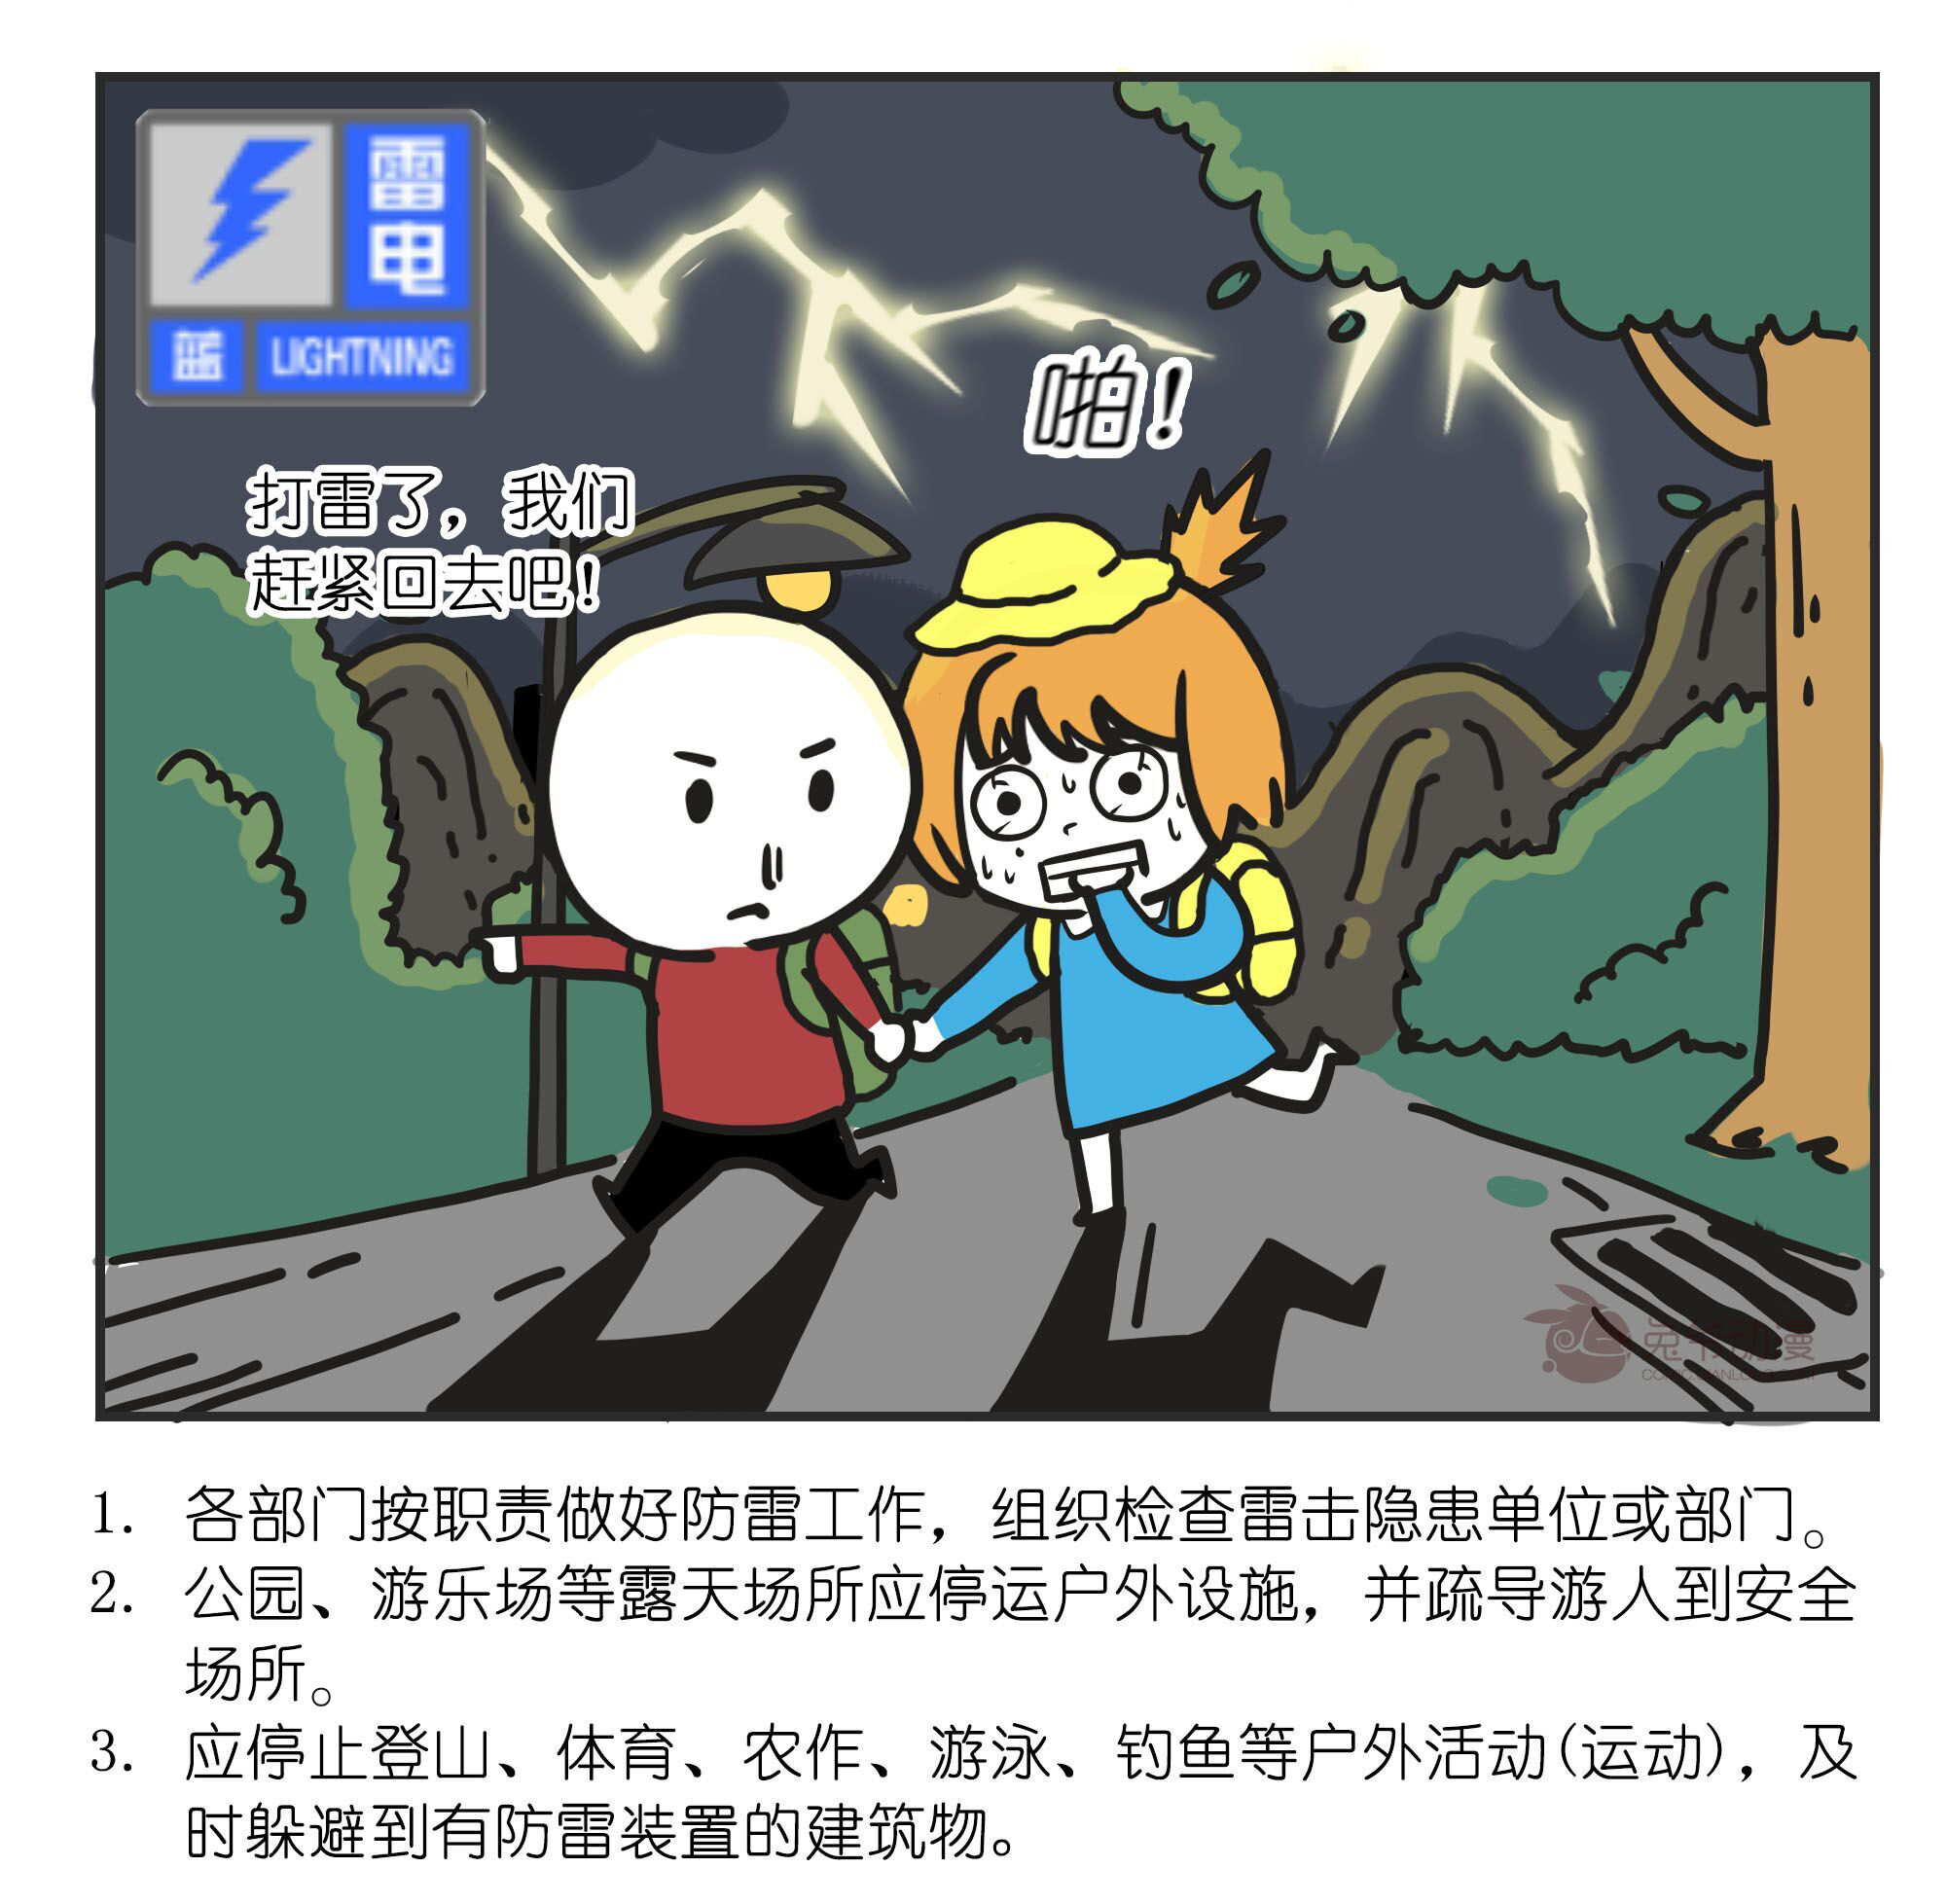 北京市2020年4月16日00时35分发布雷电蓝色预警信号